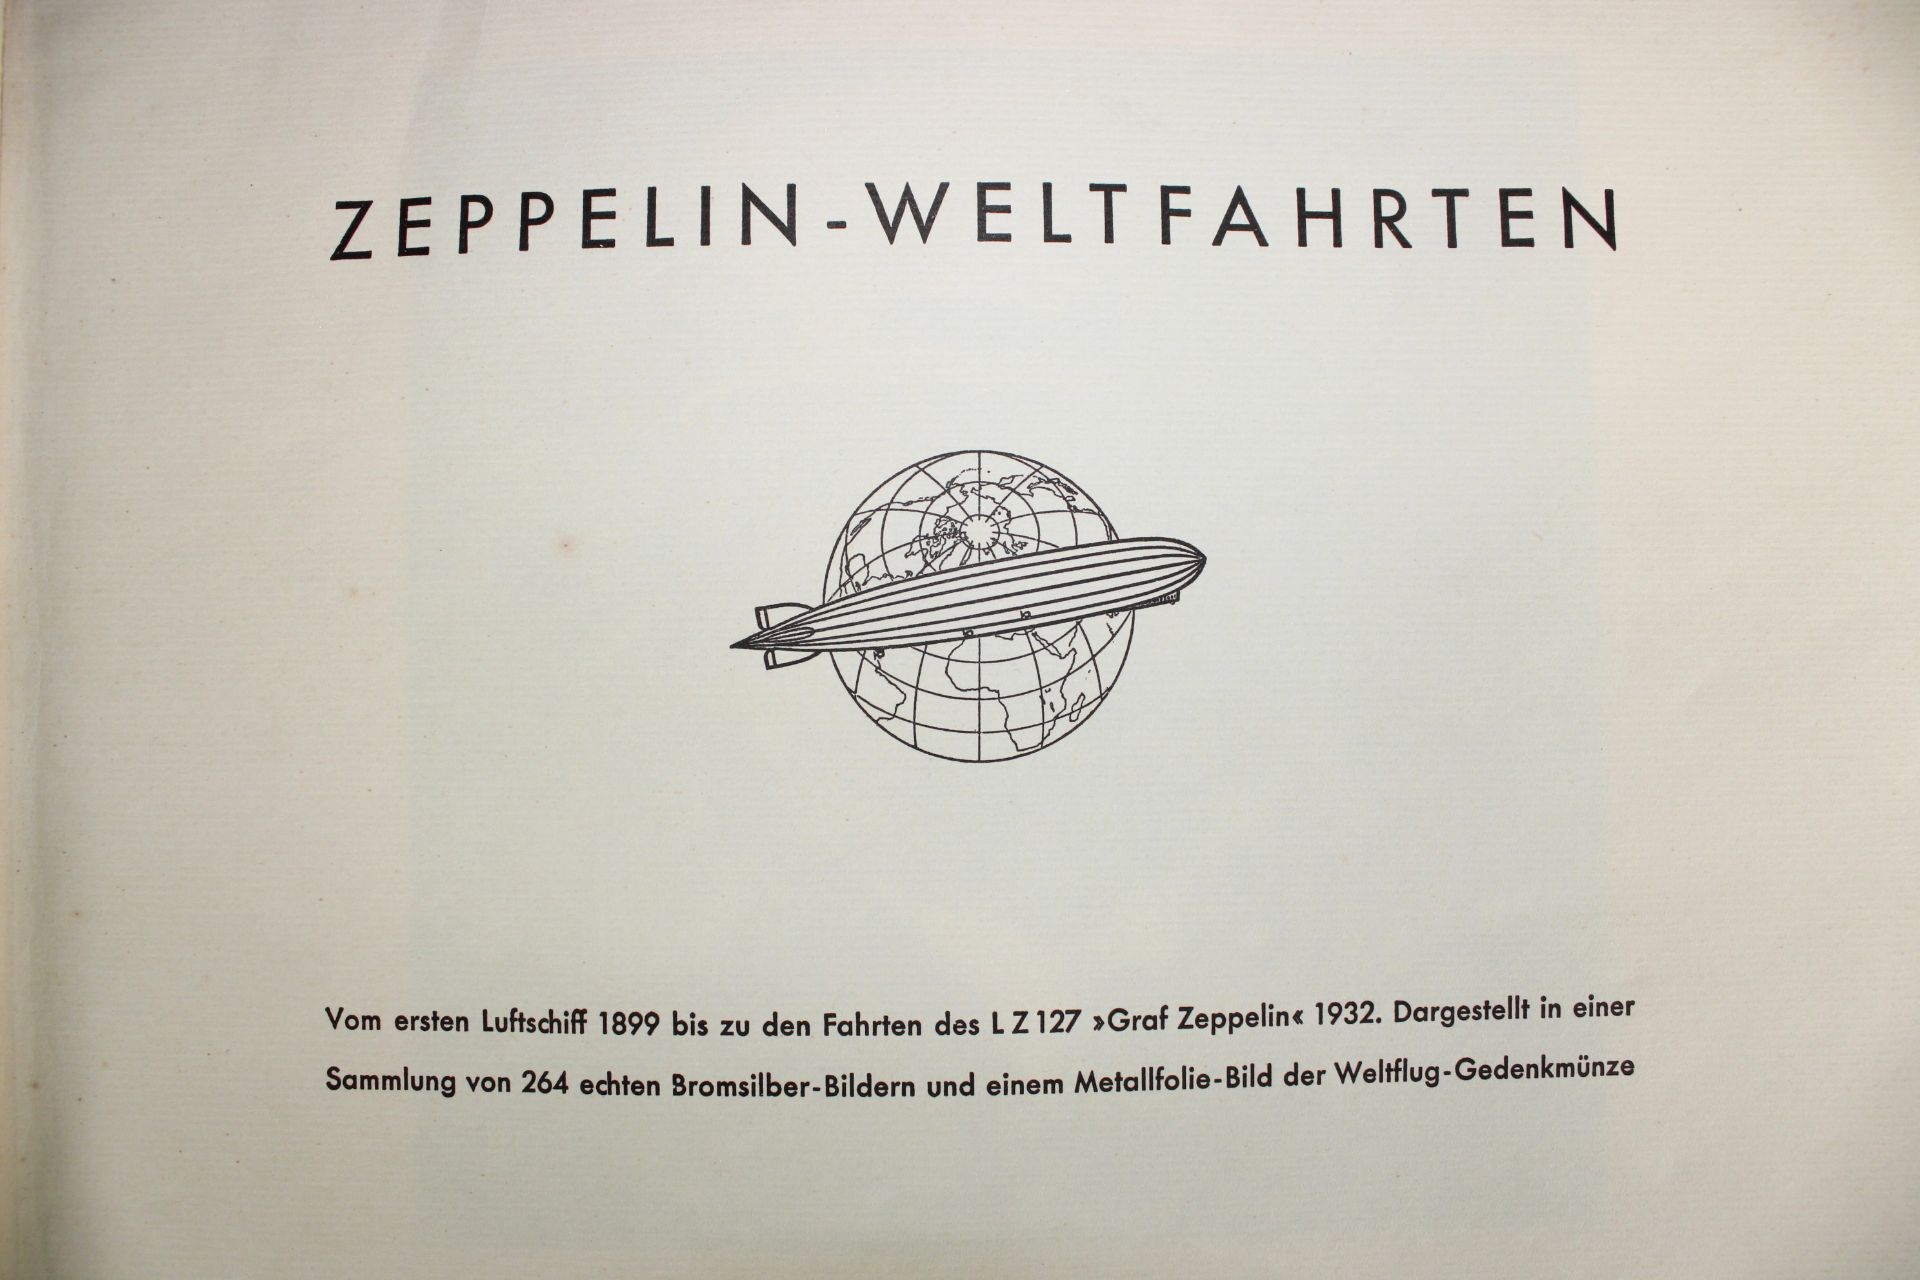 Sammelalbum Zeppelin-Weltfahrten, Bilderstelle Lohse, Dresden 1933 - Bild 2 aus 5